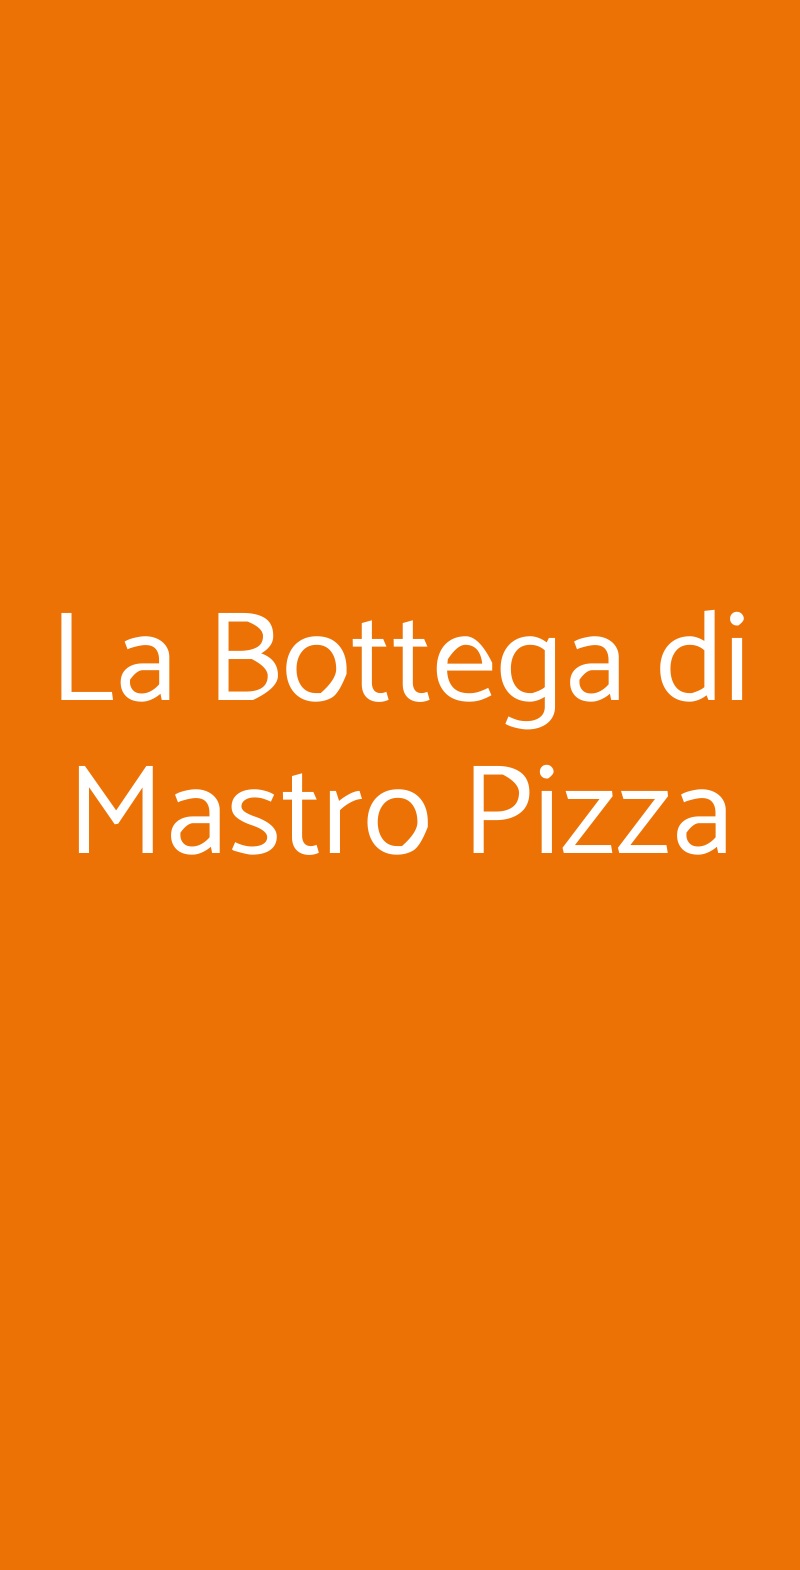 La Bottega di Mastro Pizza Roma menù 1 pagina